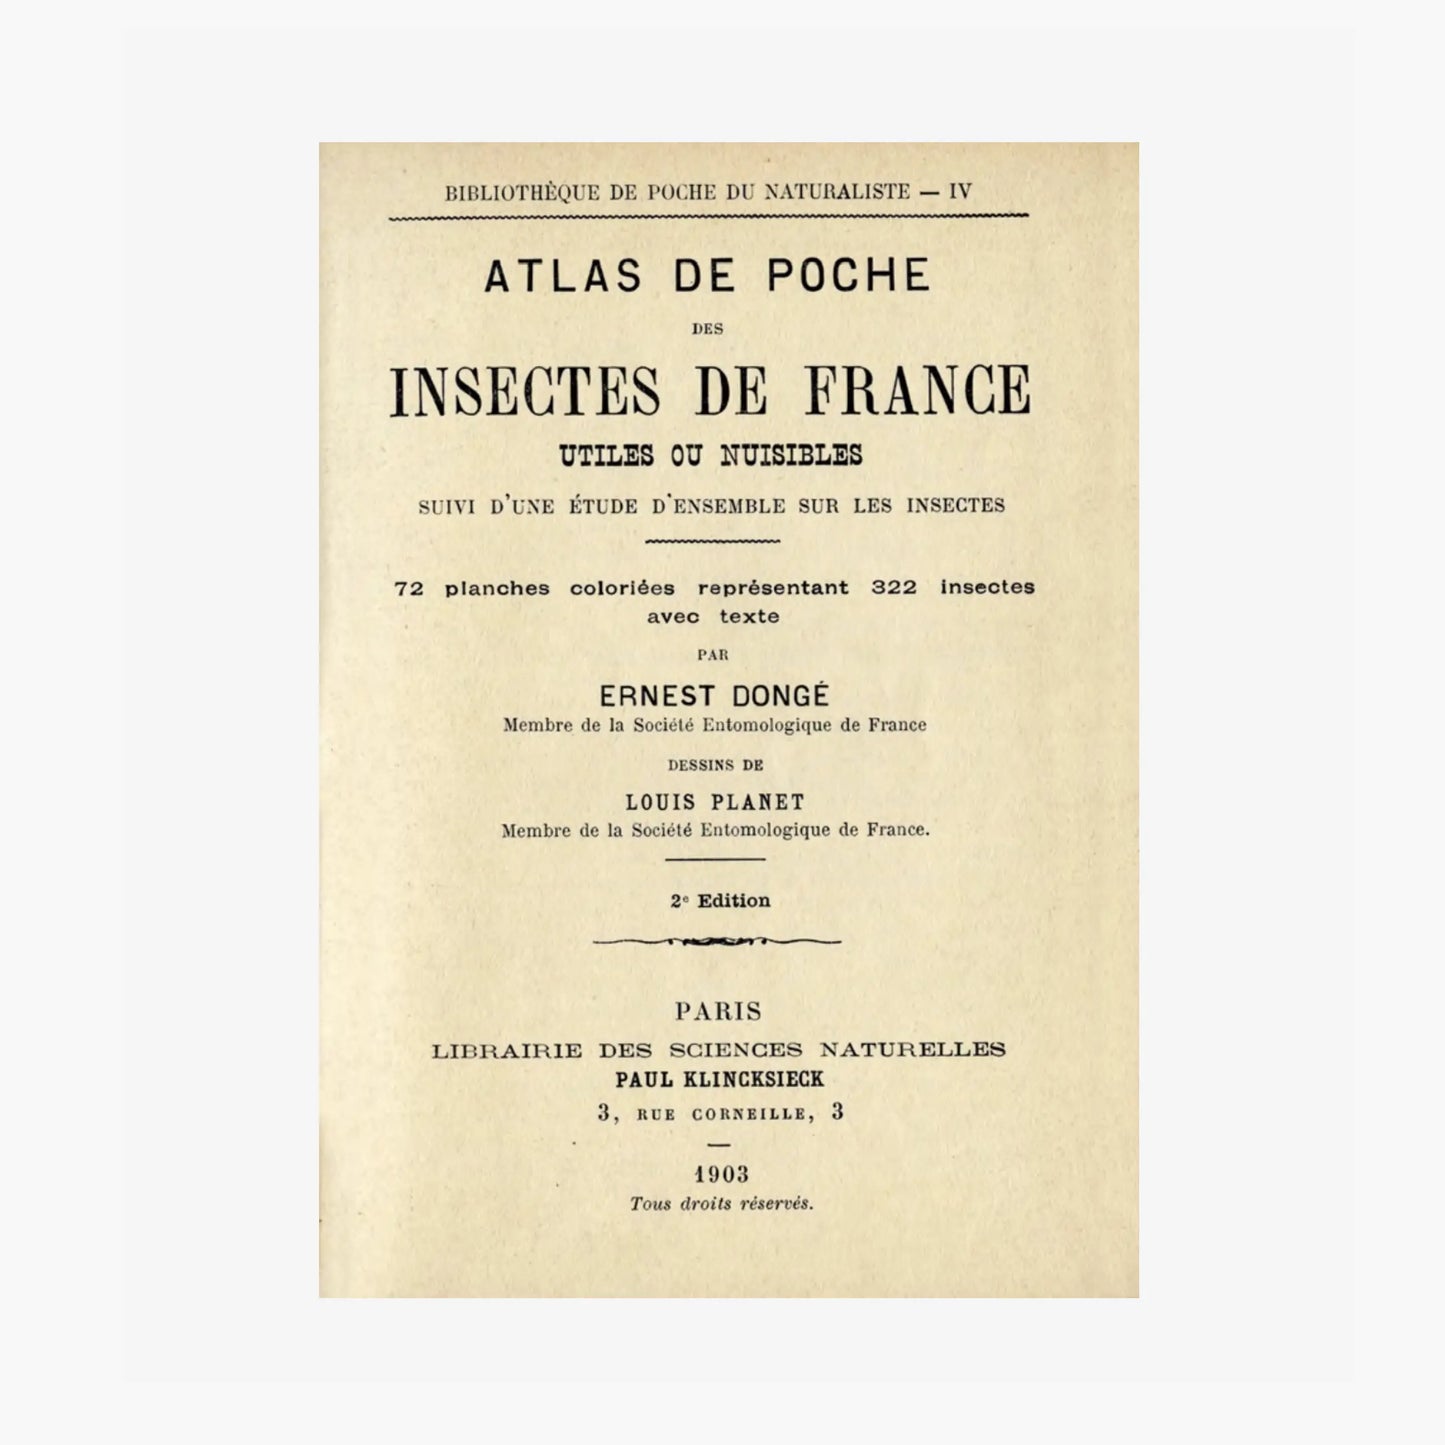 Atlas de poche des INSECTES de France (utiles ou nuisibles)